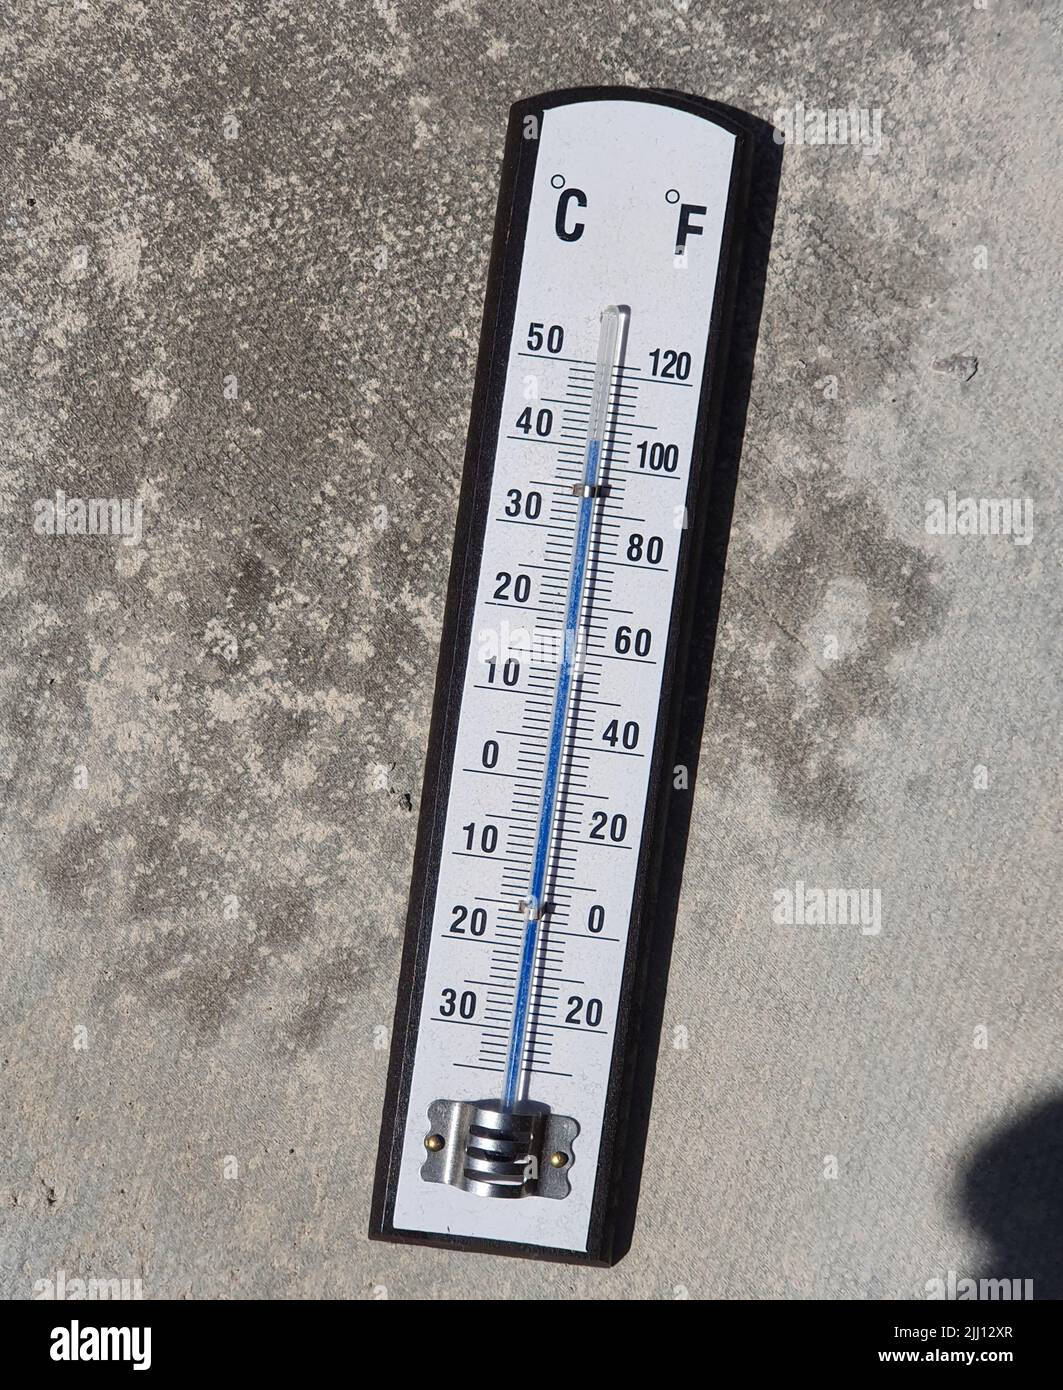 Un thermomètre en plein soleil montre 42 degrés Celsius ou 106 degrés  Fahrenheit, ce qui est juste au-dessus de la température prévue à l'ombre  pour ce lundi et mardi prochain, comme le